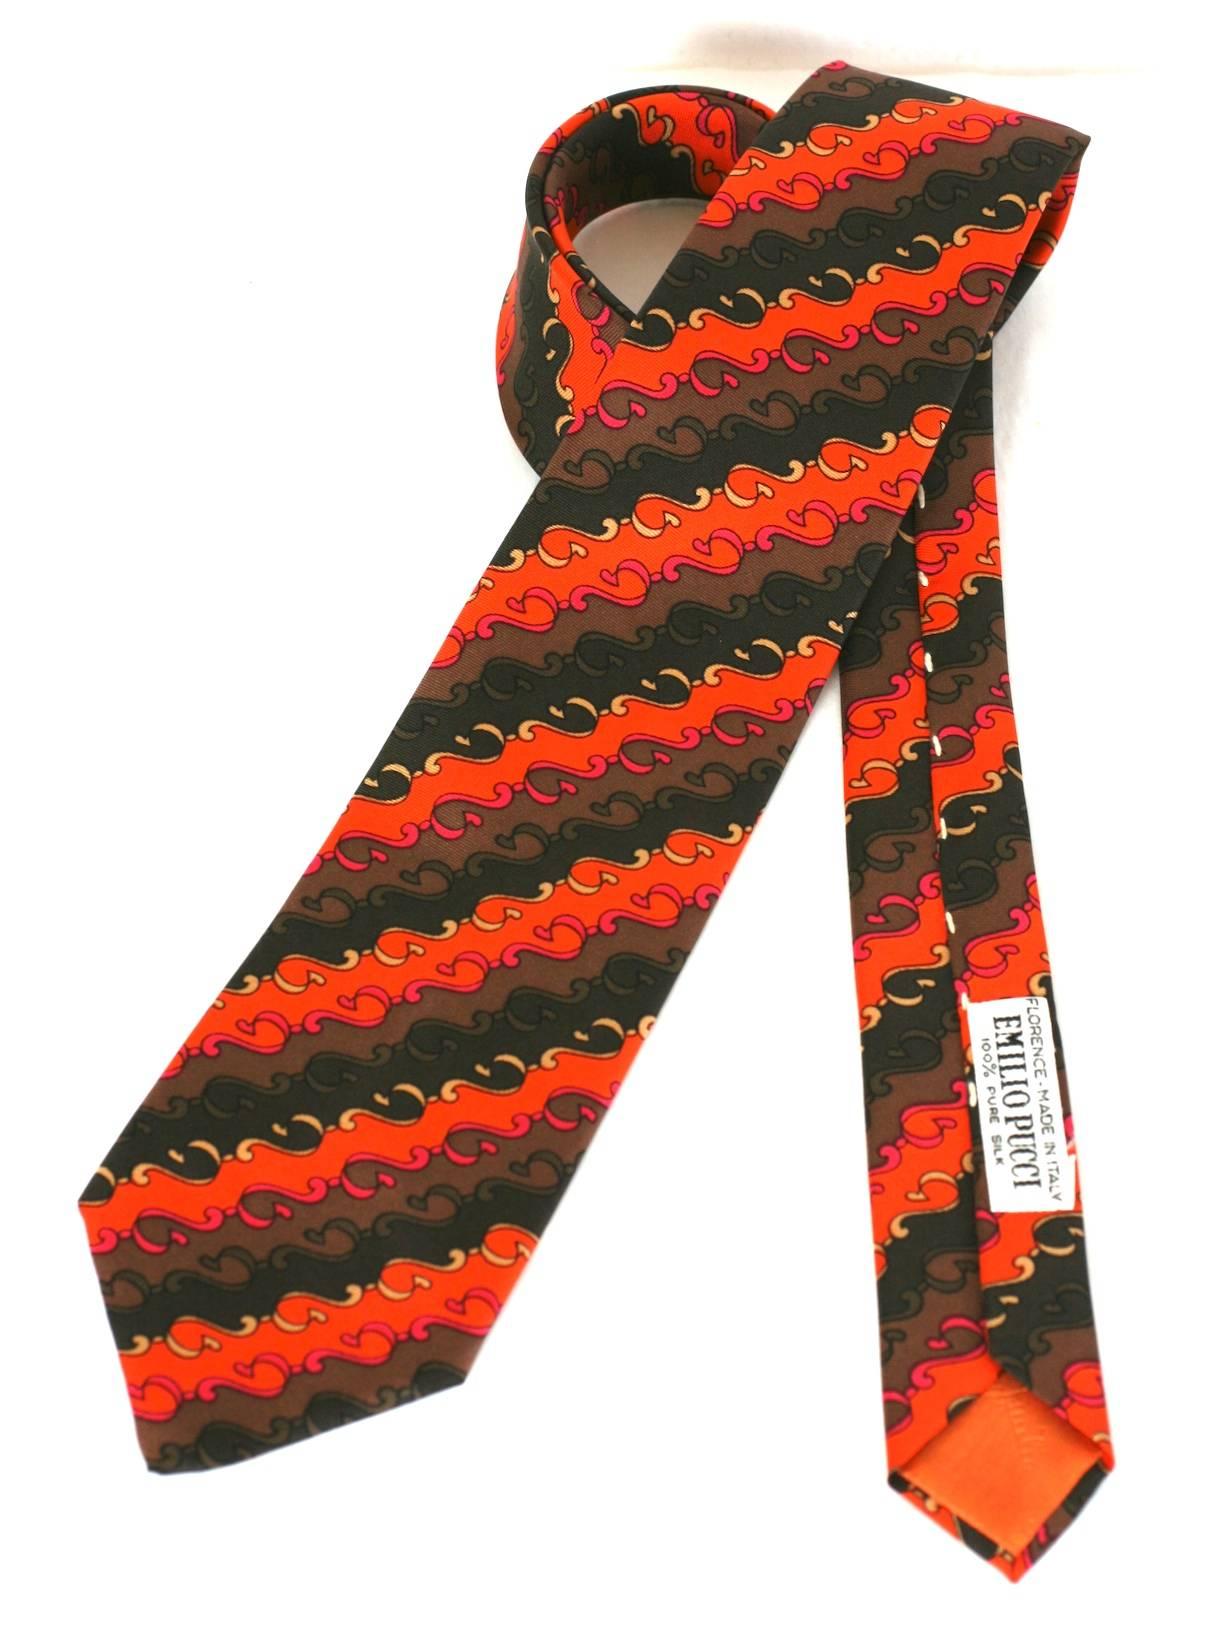 Emilio Pucci orange, brown and fuschia swirl print tie in silk twill. 1980's Italy. Excellent condition.
52